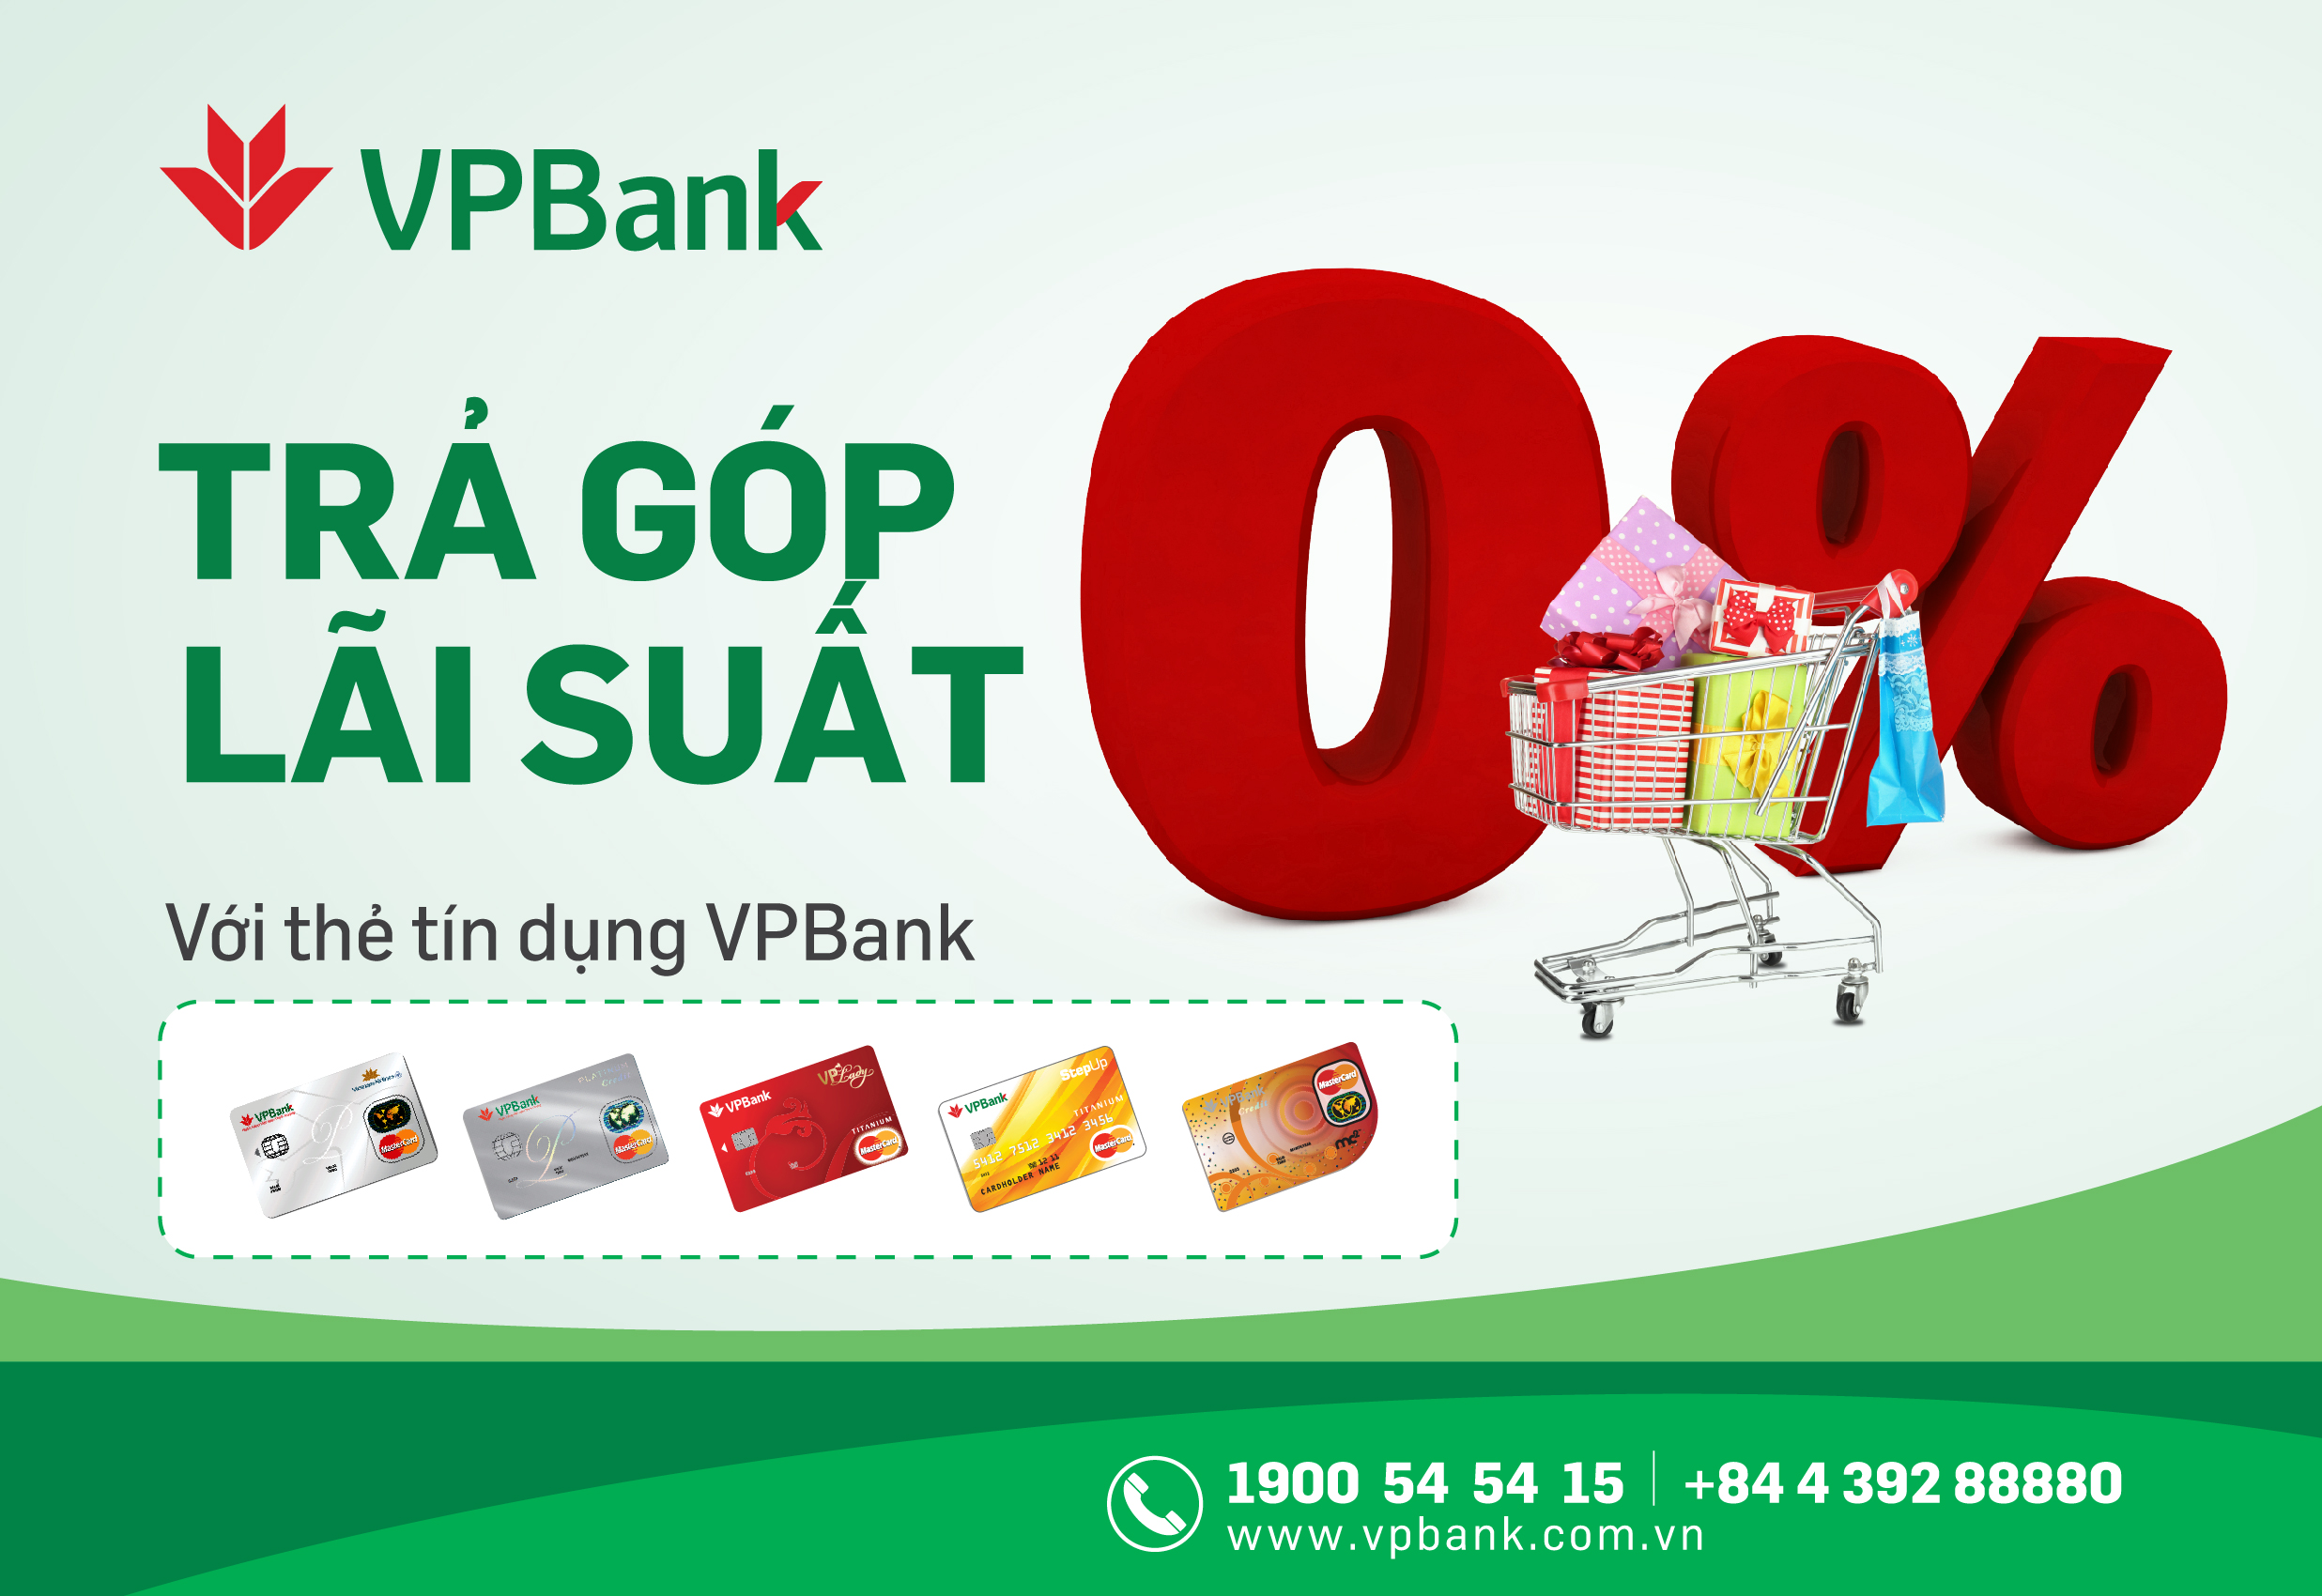 Kết quả hình ảnh cho vpbank thẻ tín dụng